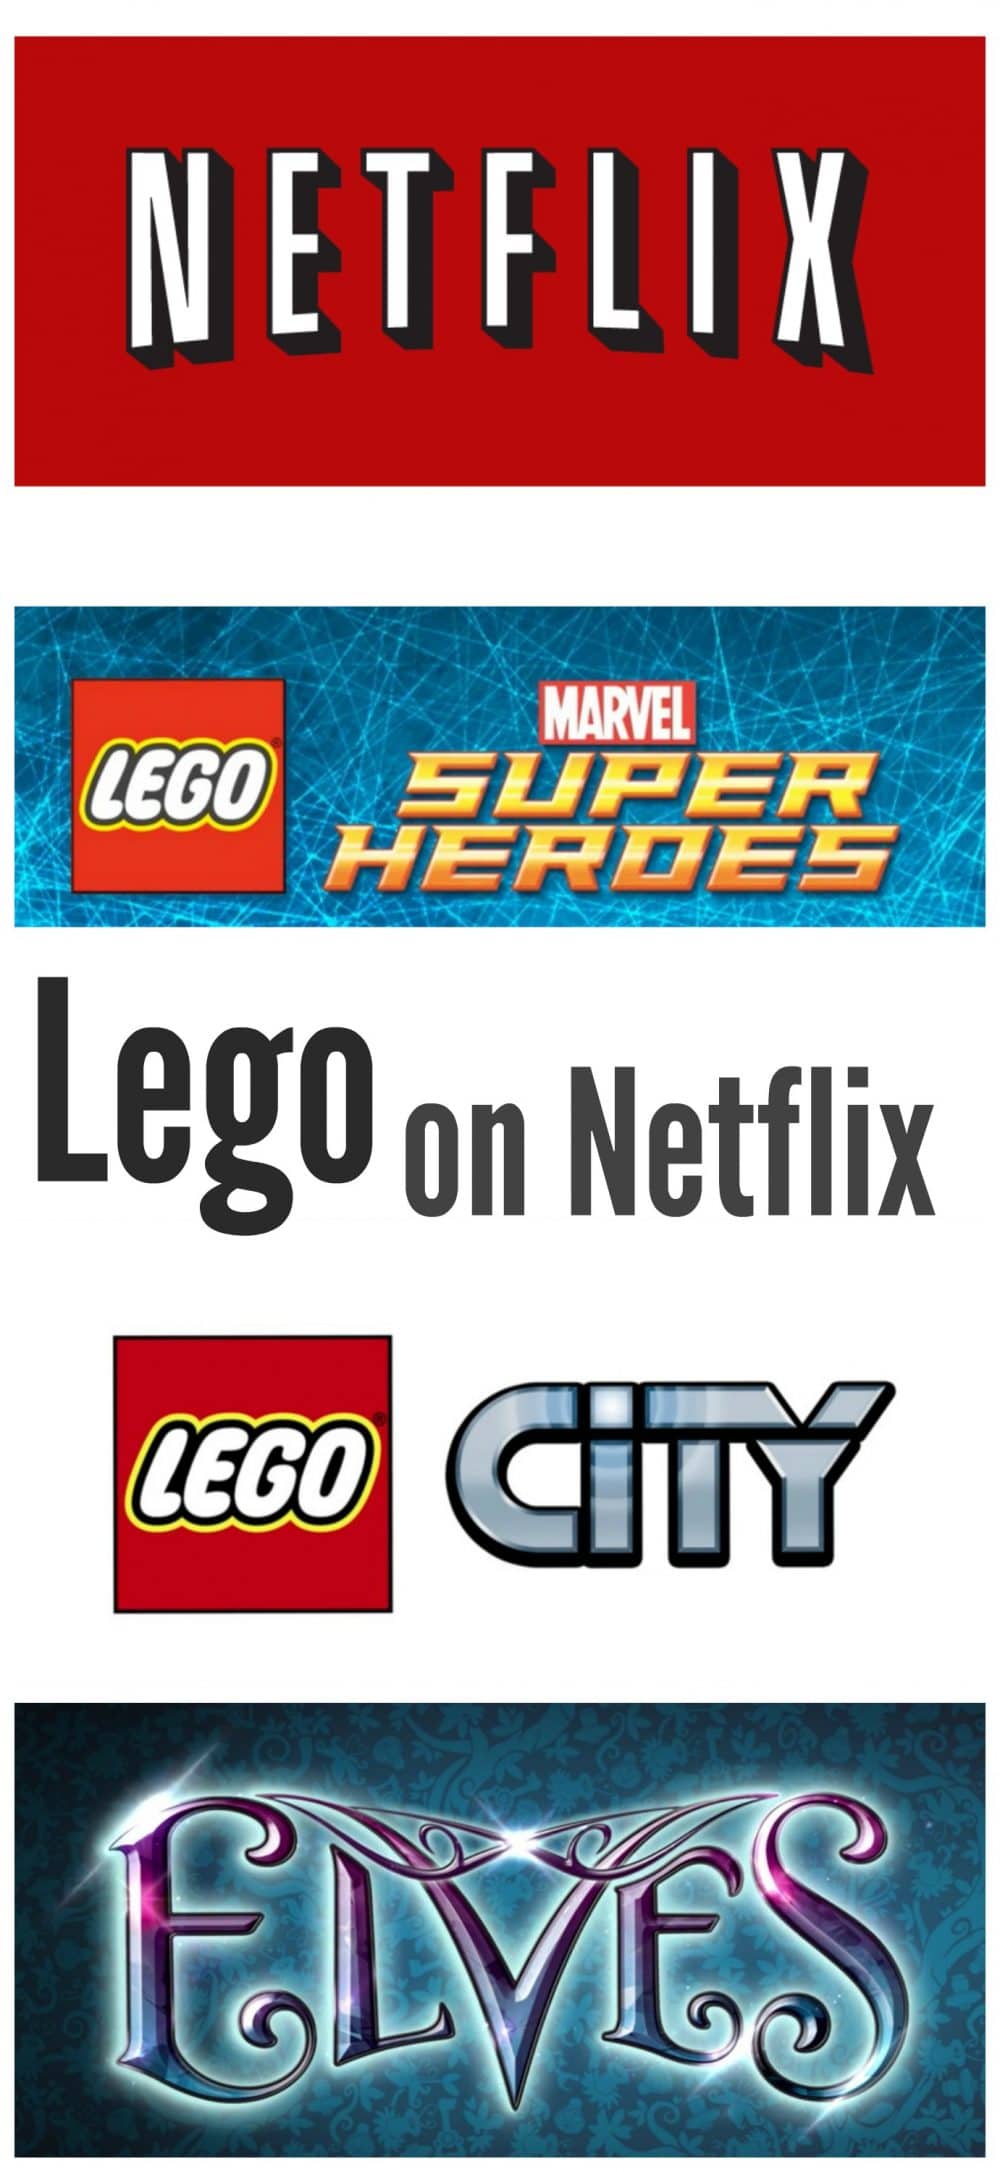 Lego Videos on Netflix